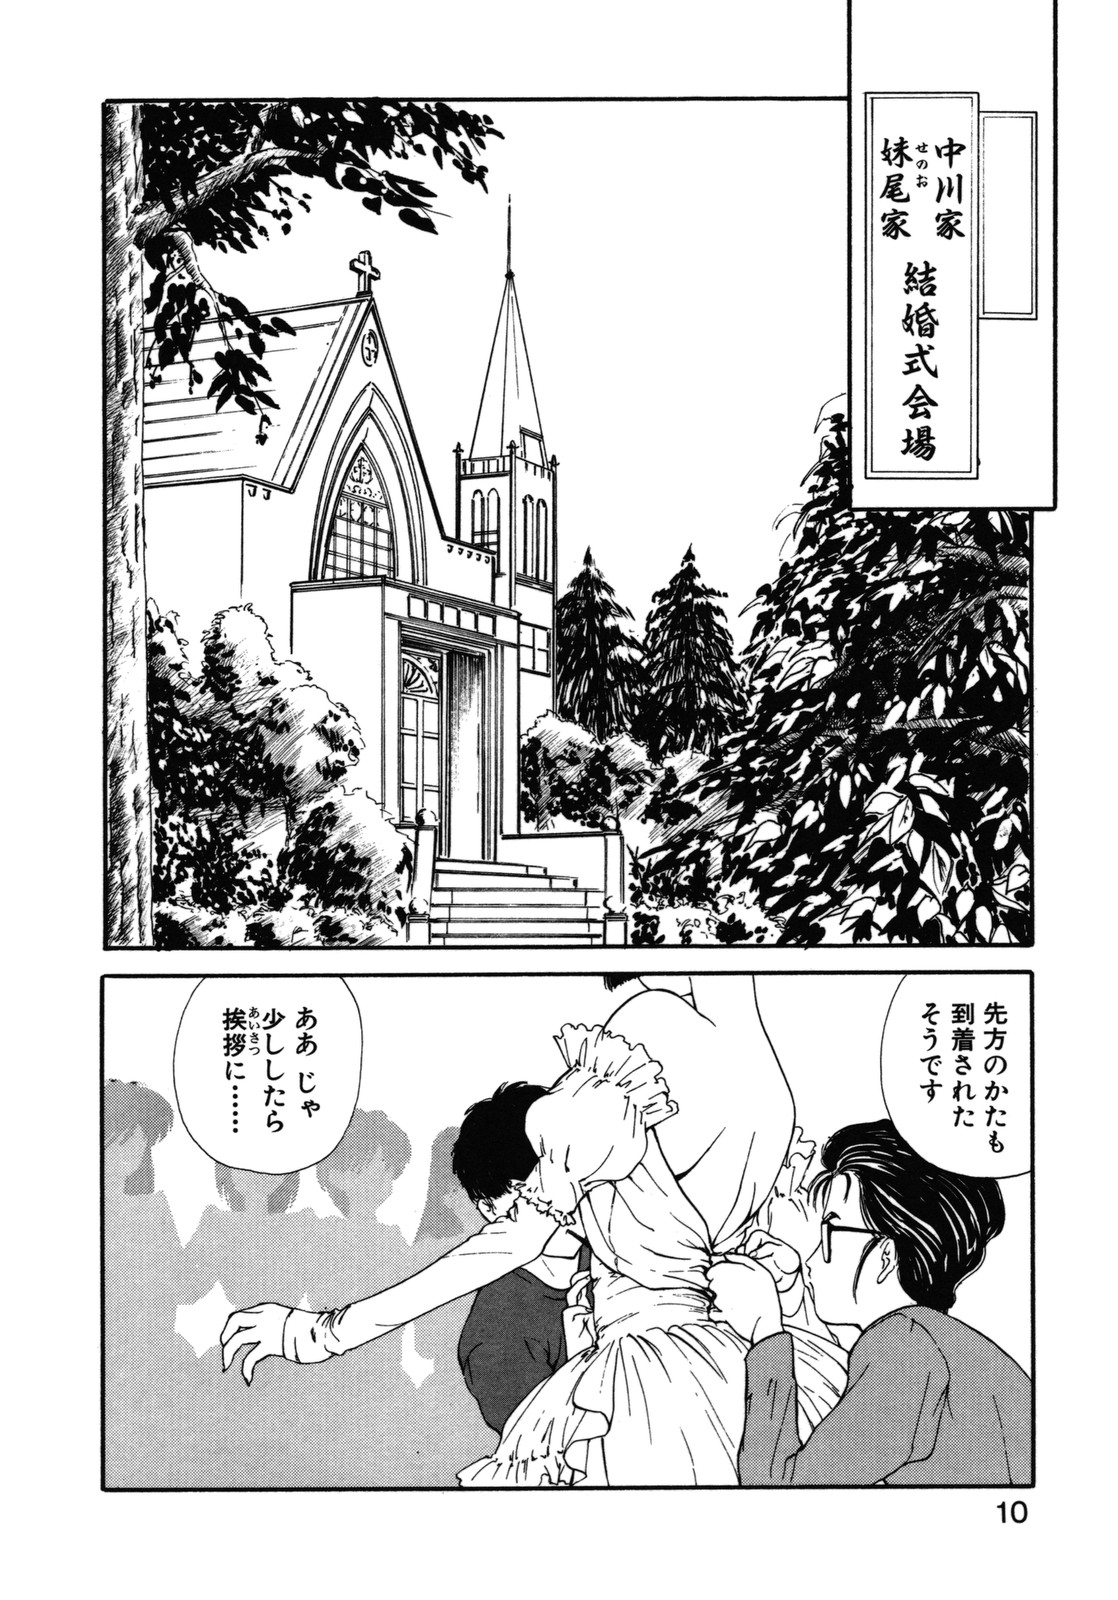 [Utatane Hiroyuki] COUNT DOWN page 11 full